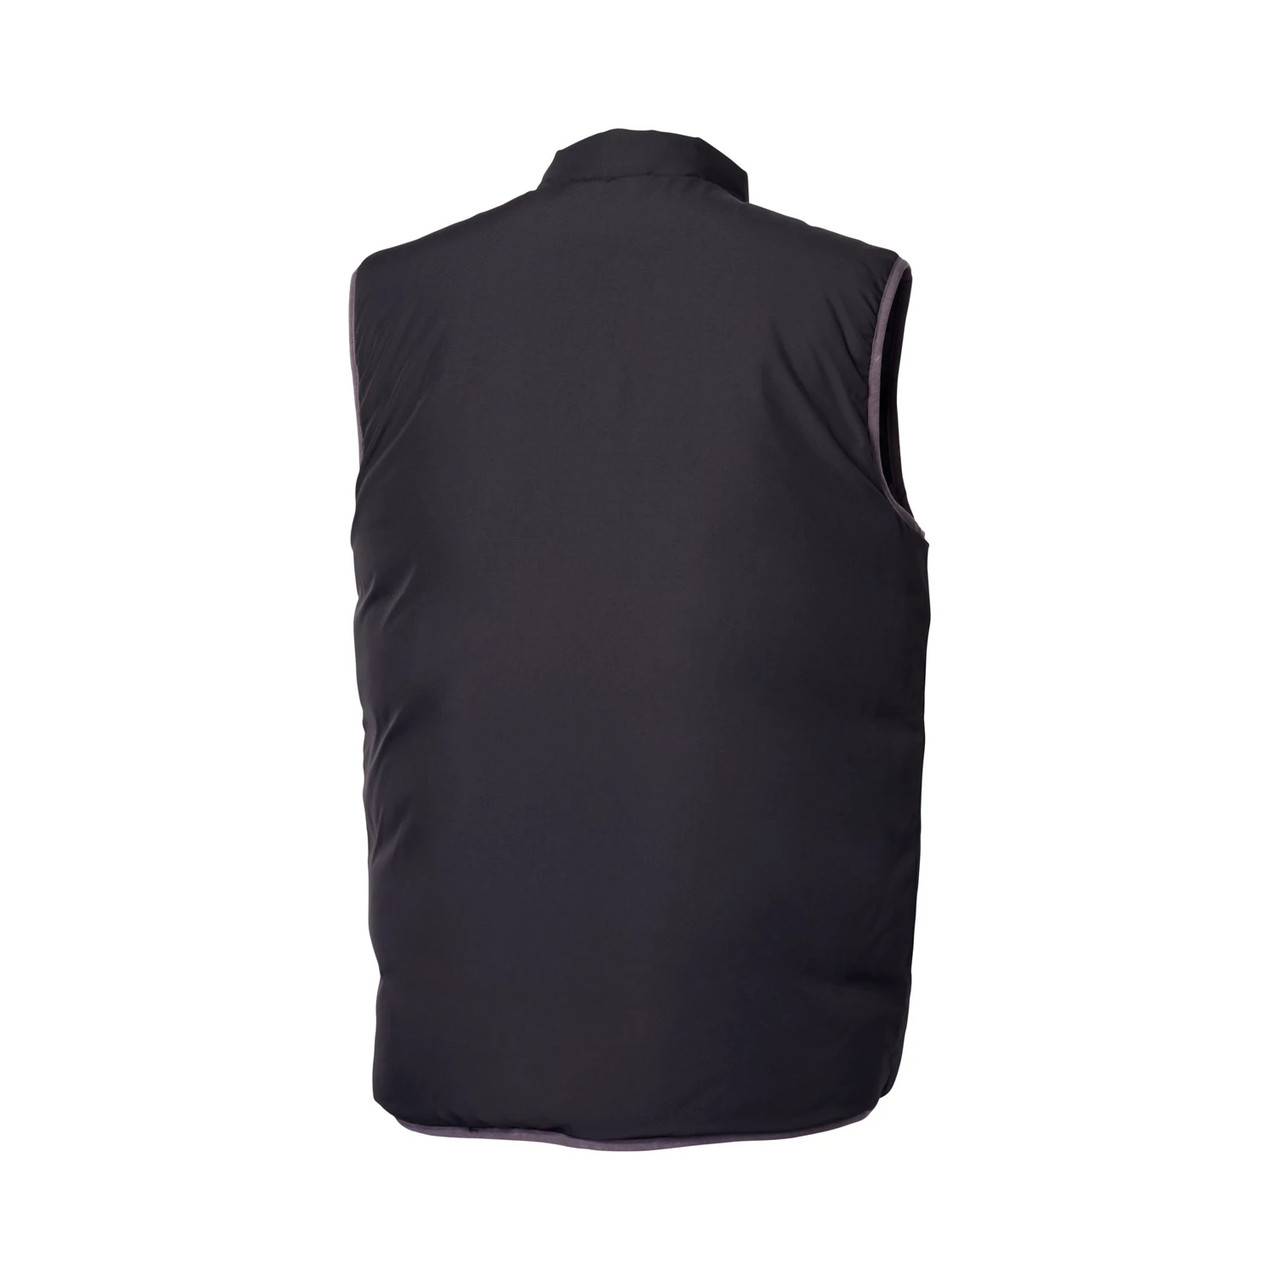 Polaris New OEM Black/Gray Men's Reversible Windbreak Revolve Vest, 286256509